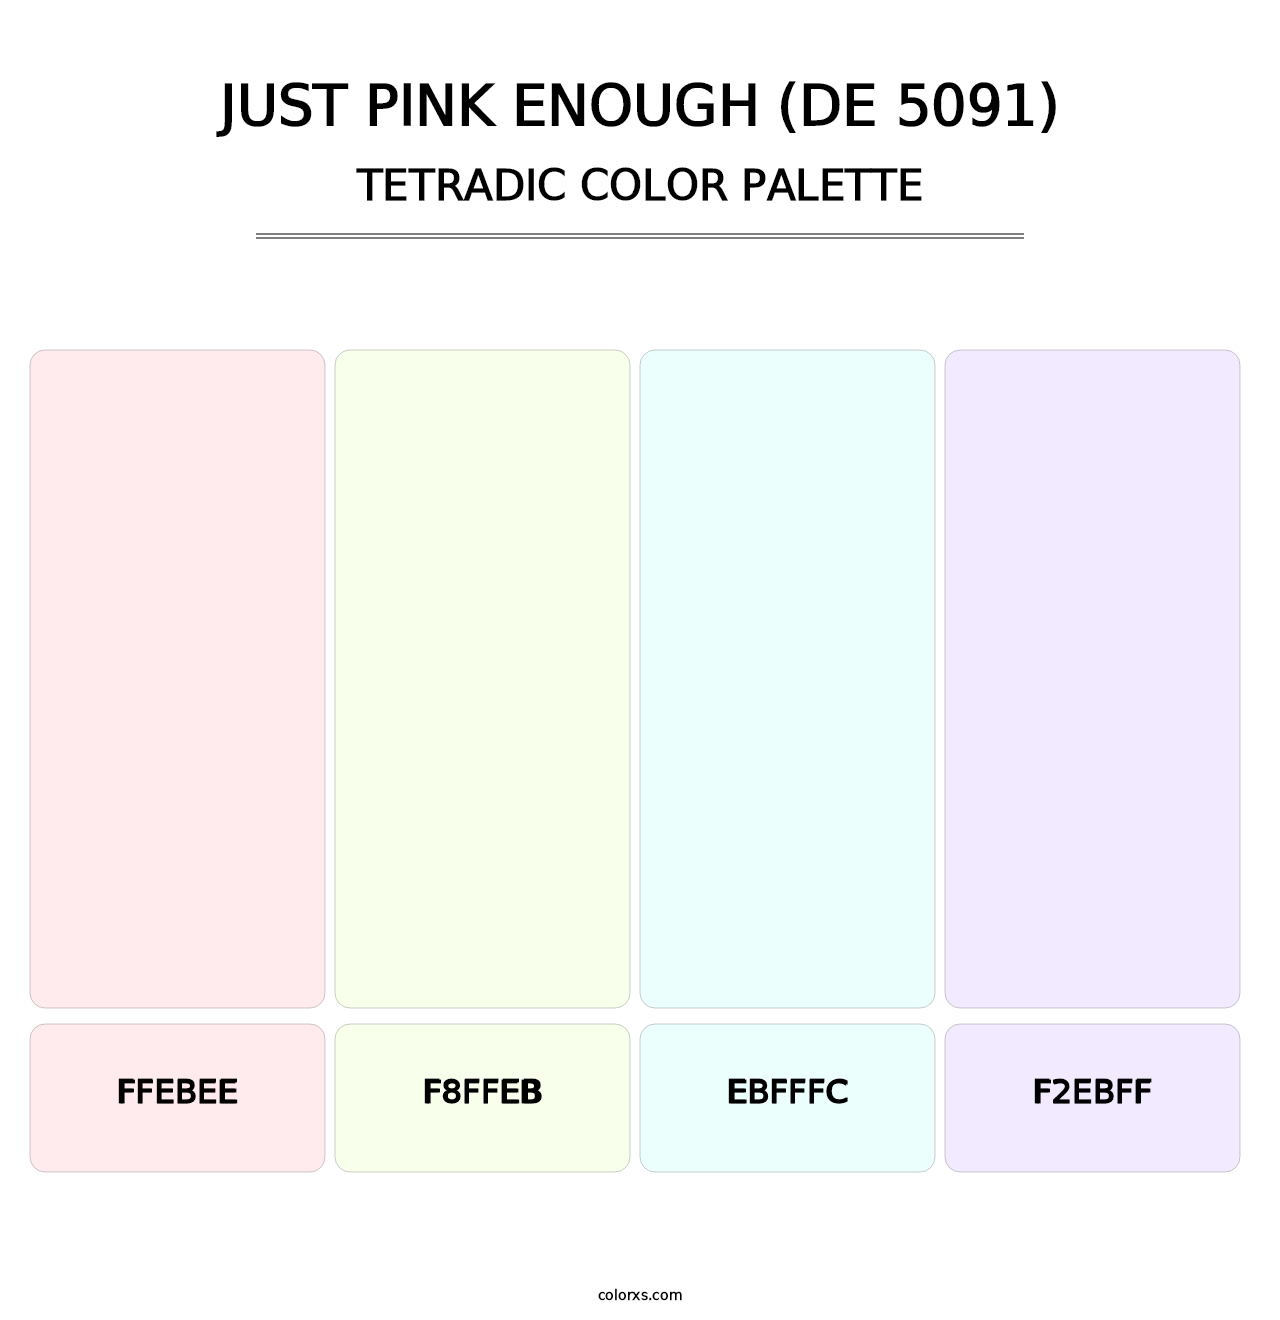 Just Pink Enough (DE 5091) - Tetradic Color Palette